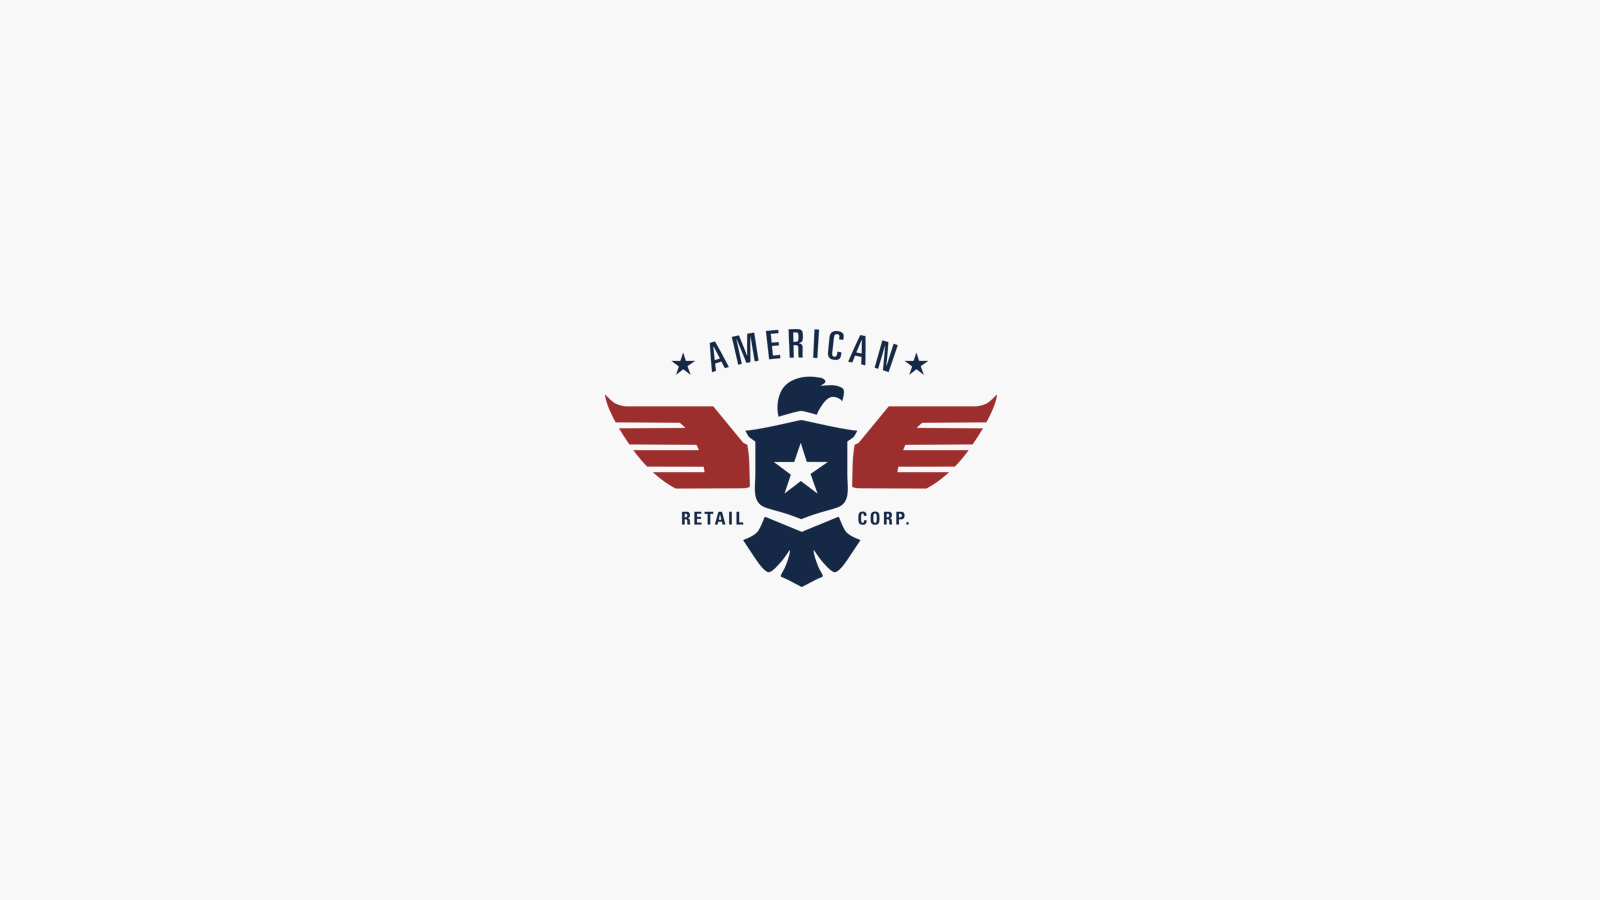 American Retail Company Logo - Logo Design Examples Feature - James Arthur Design Co